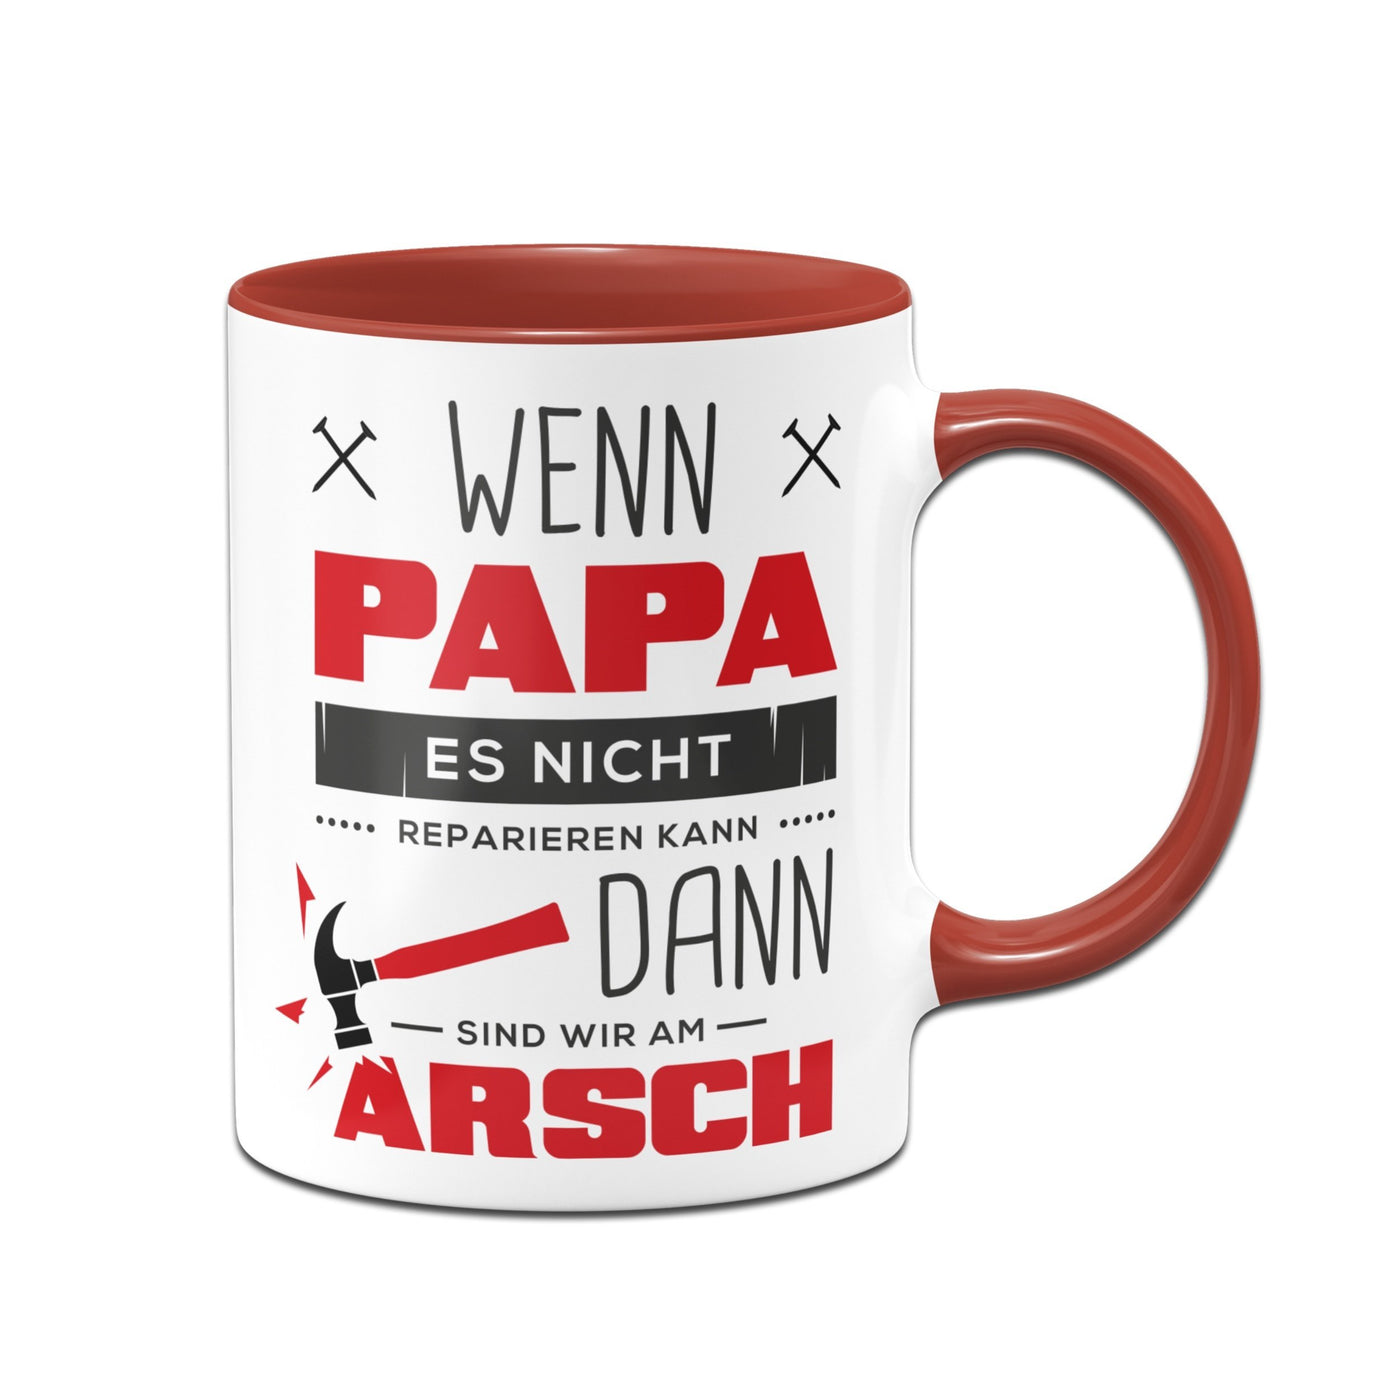 Bild: Tasse - Wenn Papa es nicht reparieren kann sind wir am Arsch Geschenkidee